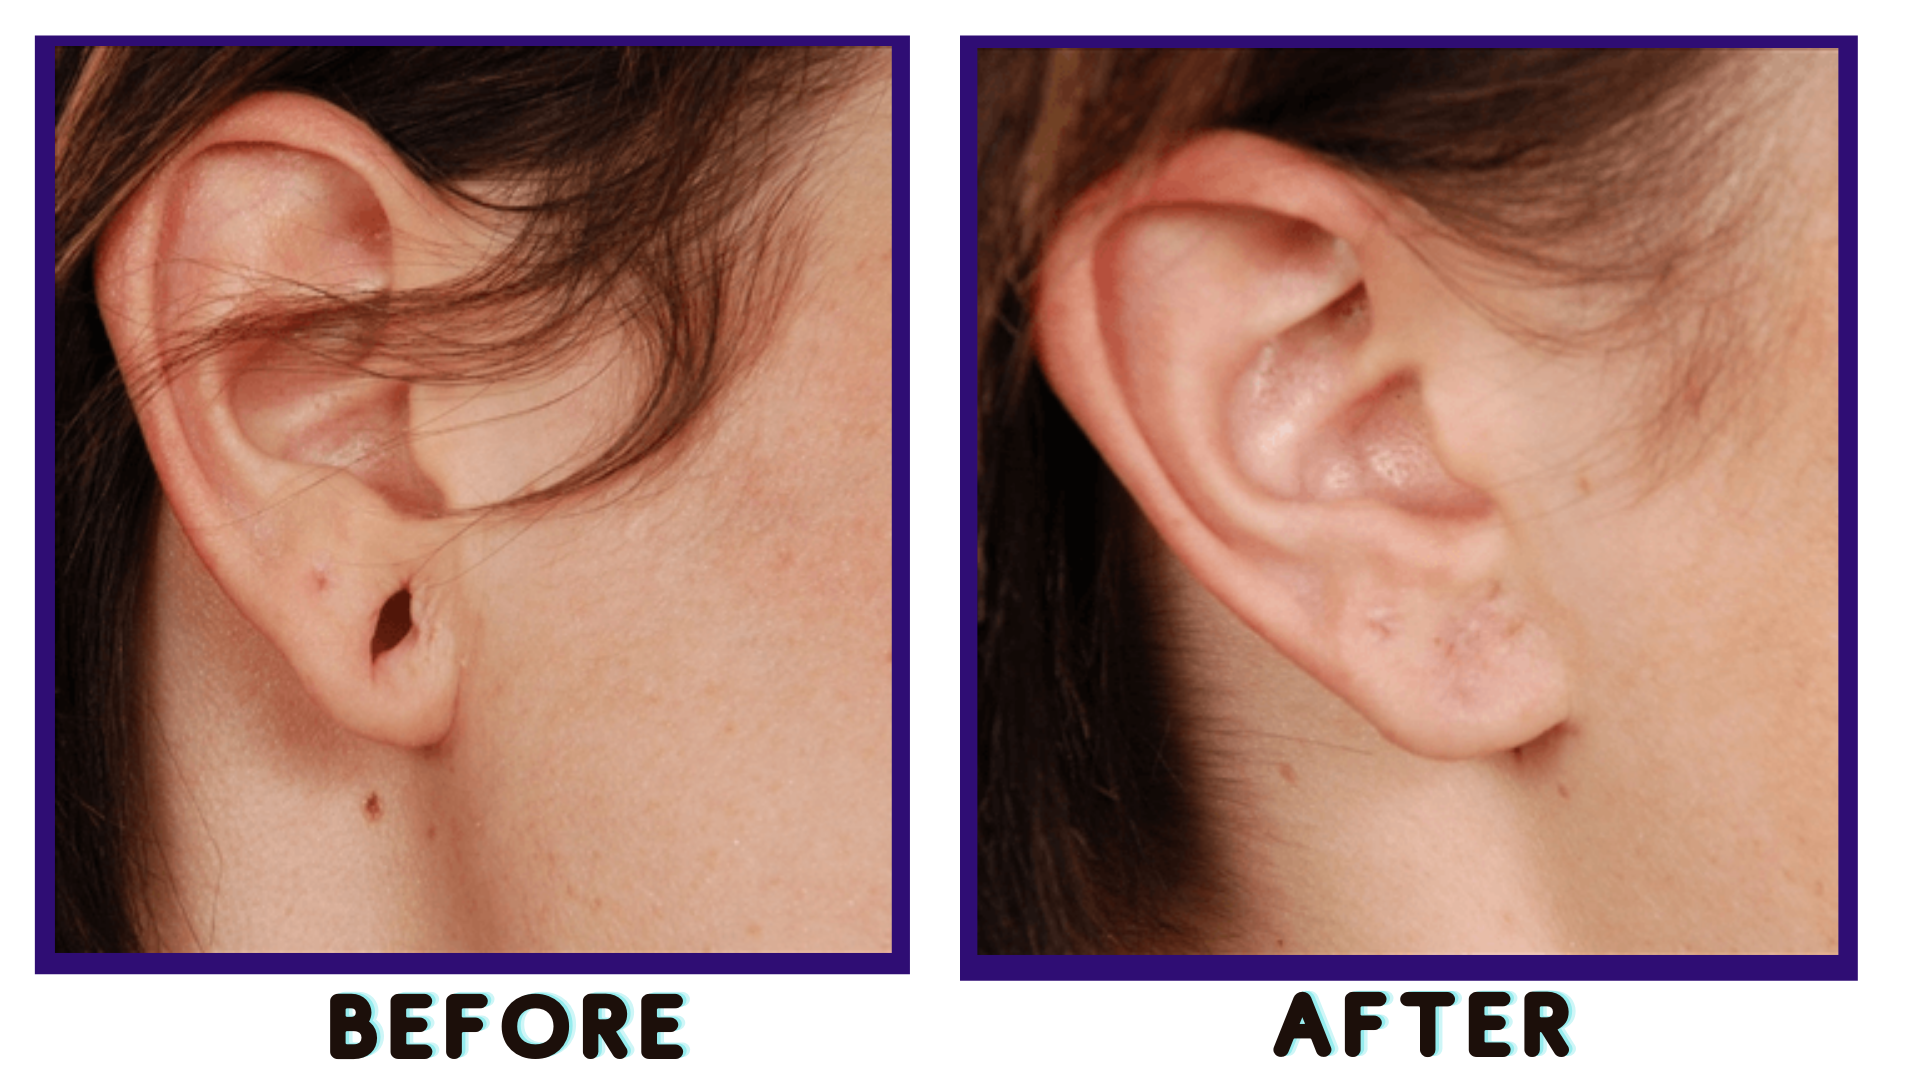 Earring Repair: Post & Back Replacement